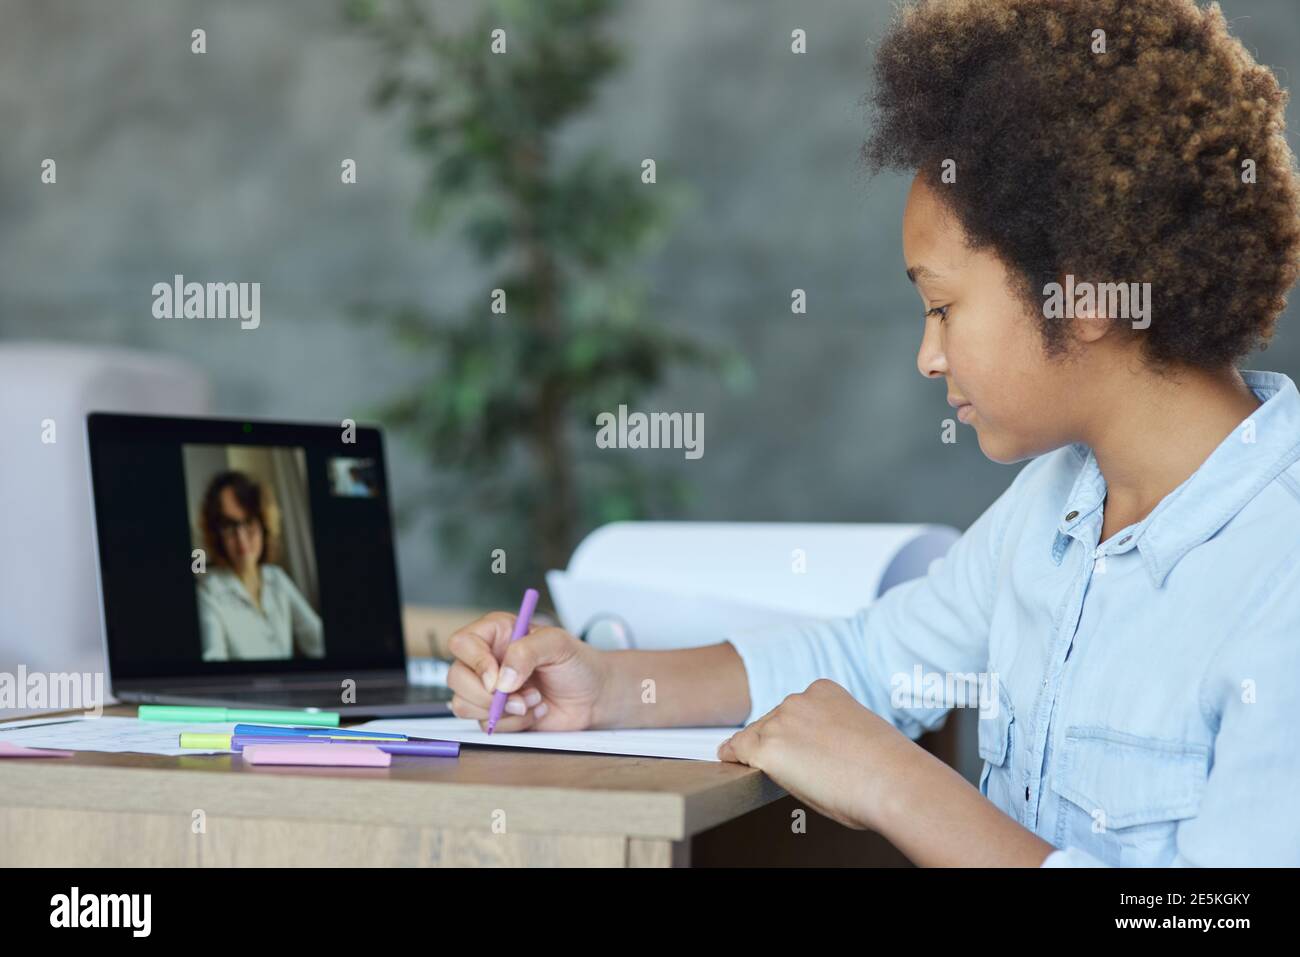 Messa a fuoco mista razza scolara disegno su carta con marcatori colorati, utilizzando il laptop durante la video lezione online con l'insegnante a casa Foto Stock